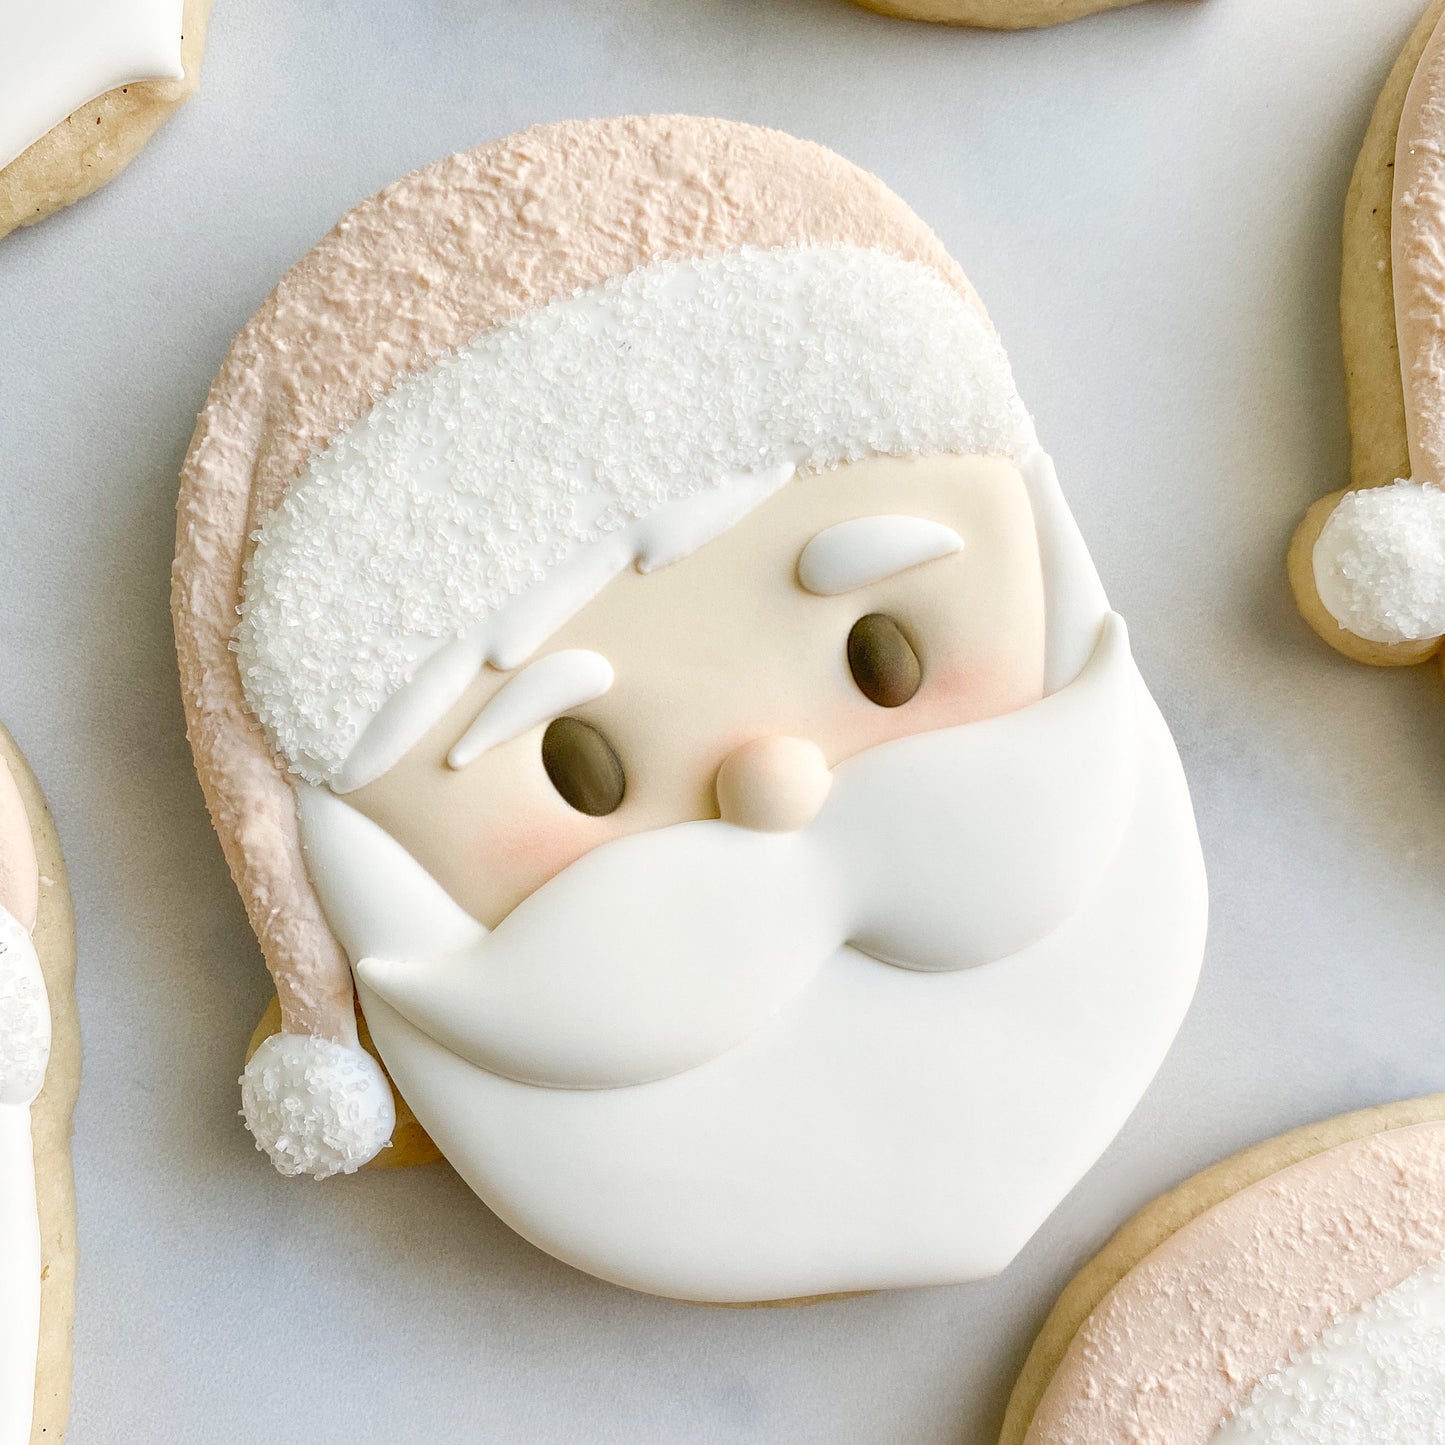 Santa cookie cutter